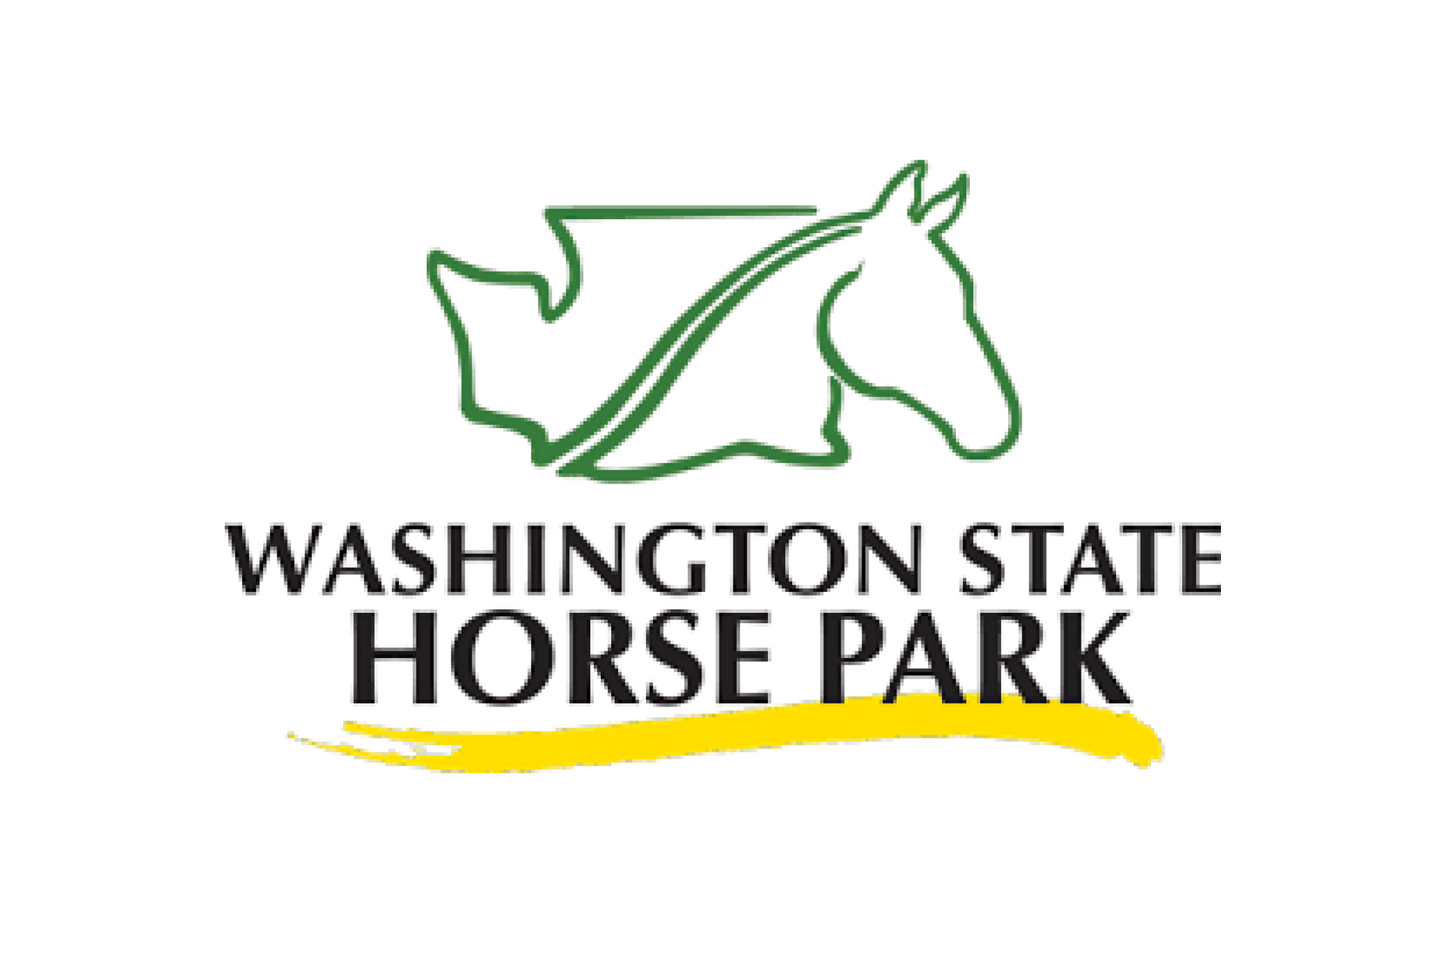 Washington State Horse Park